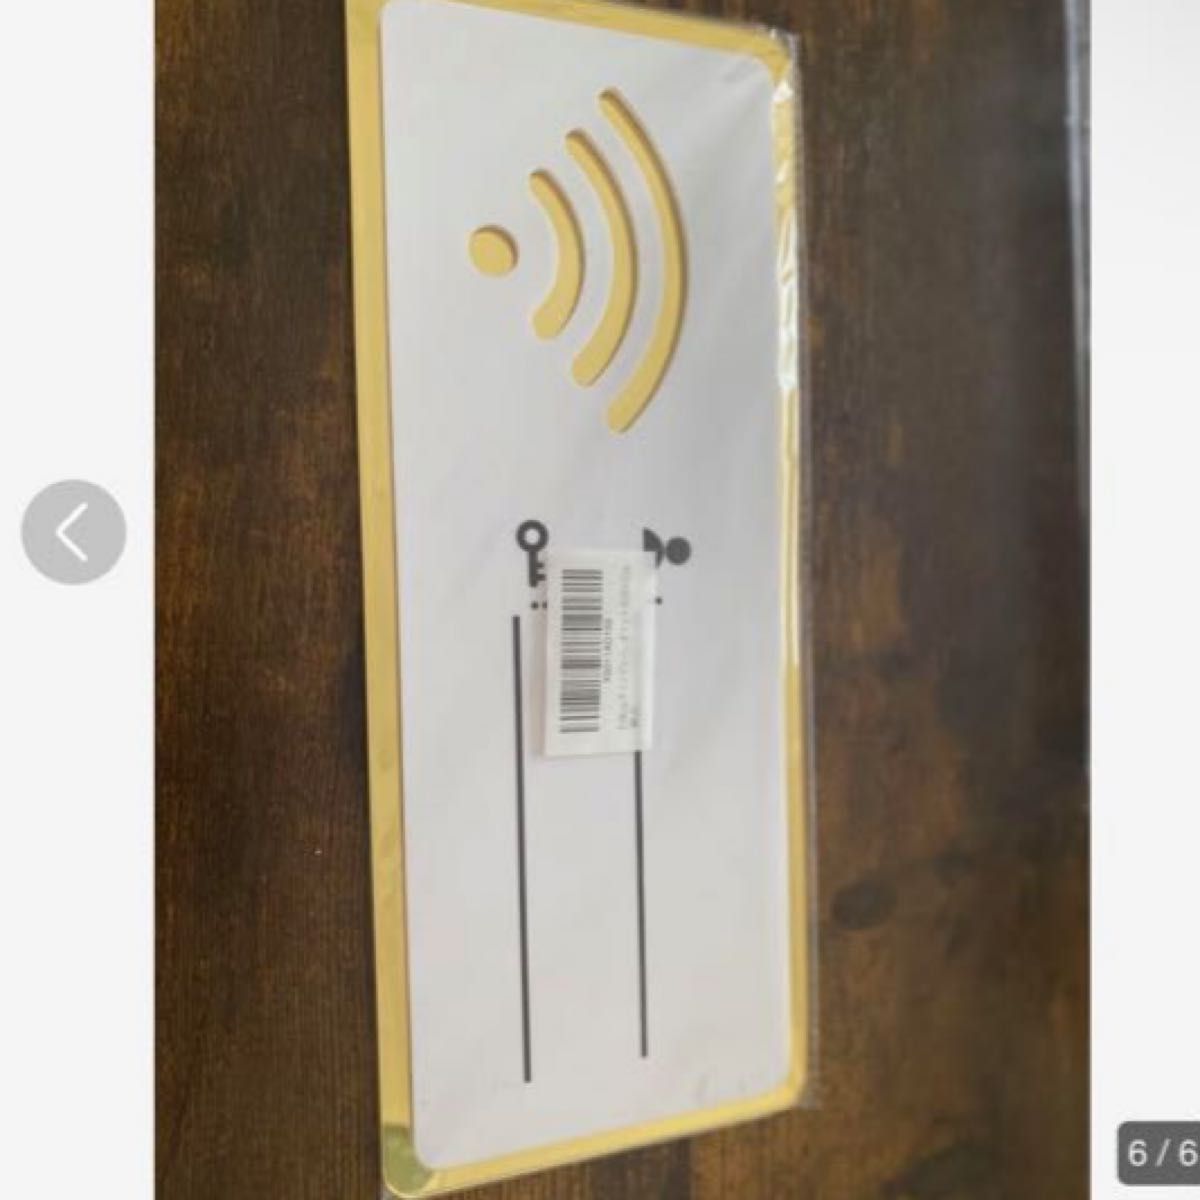 サインプレート WiFi ルーター 標識 看板 パスワード WiFi表示 WiFi サインボード Signboard